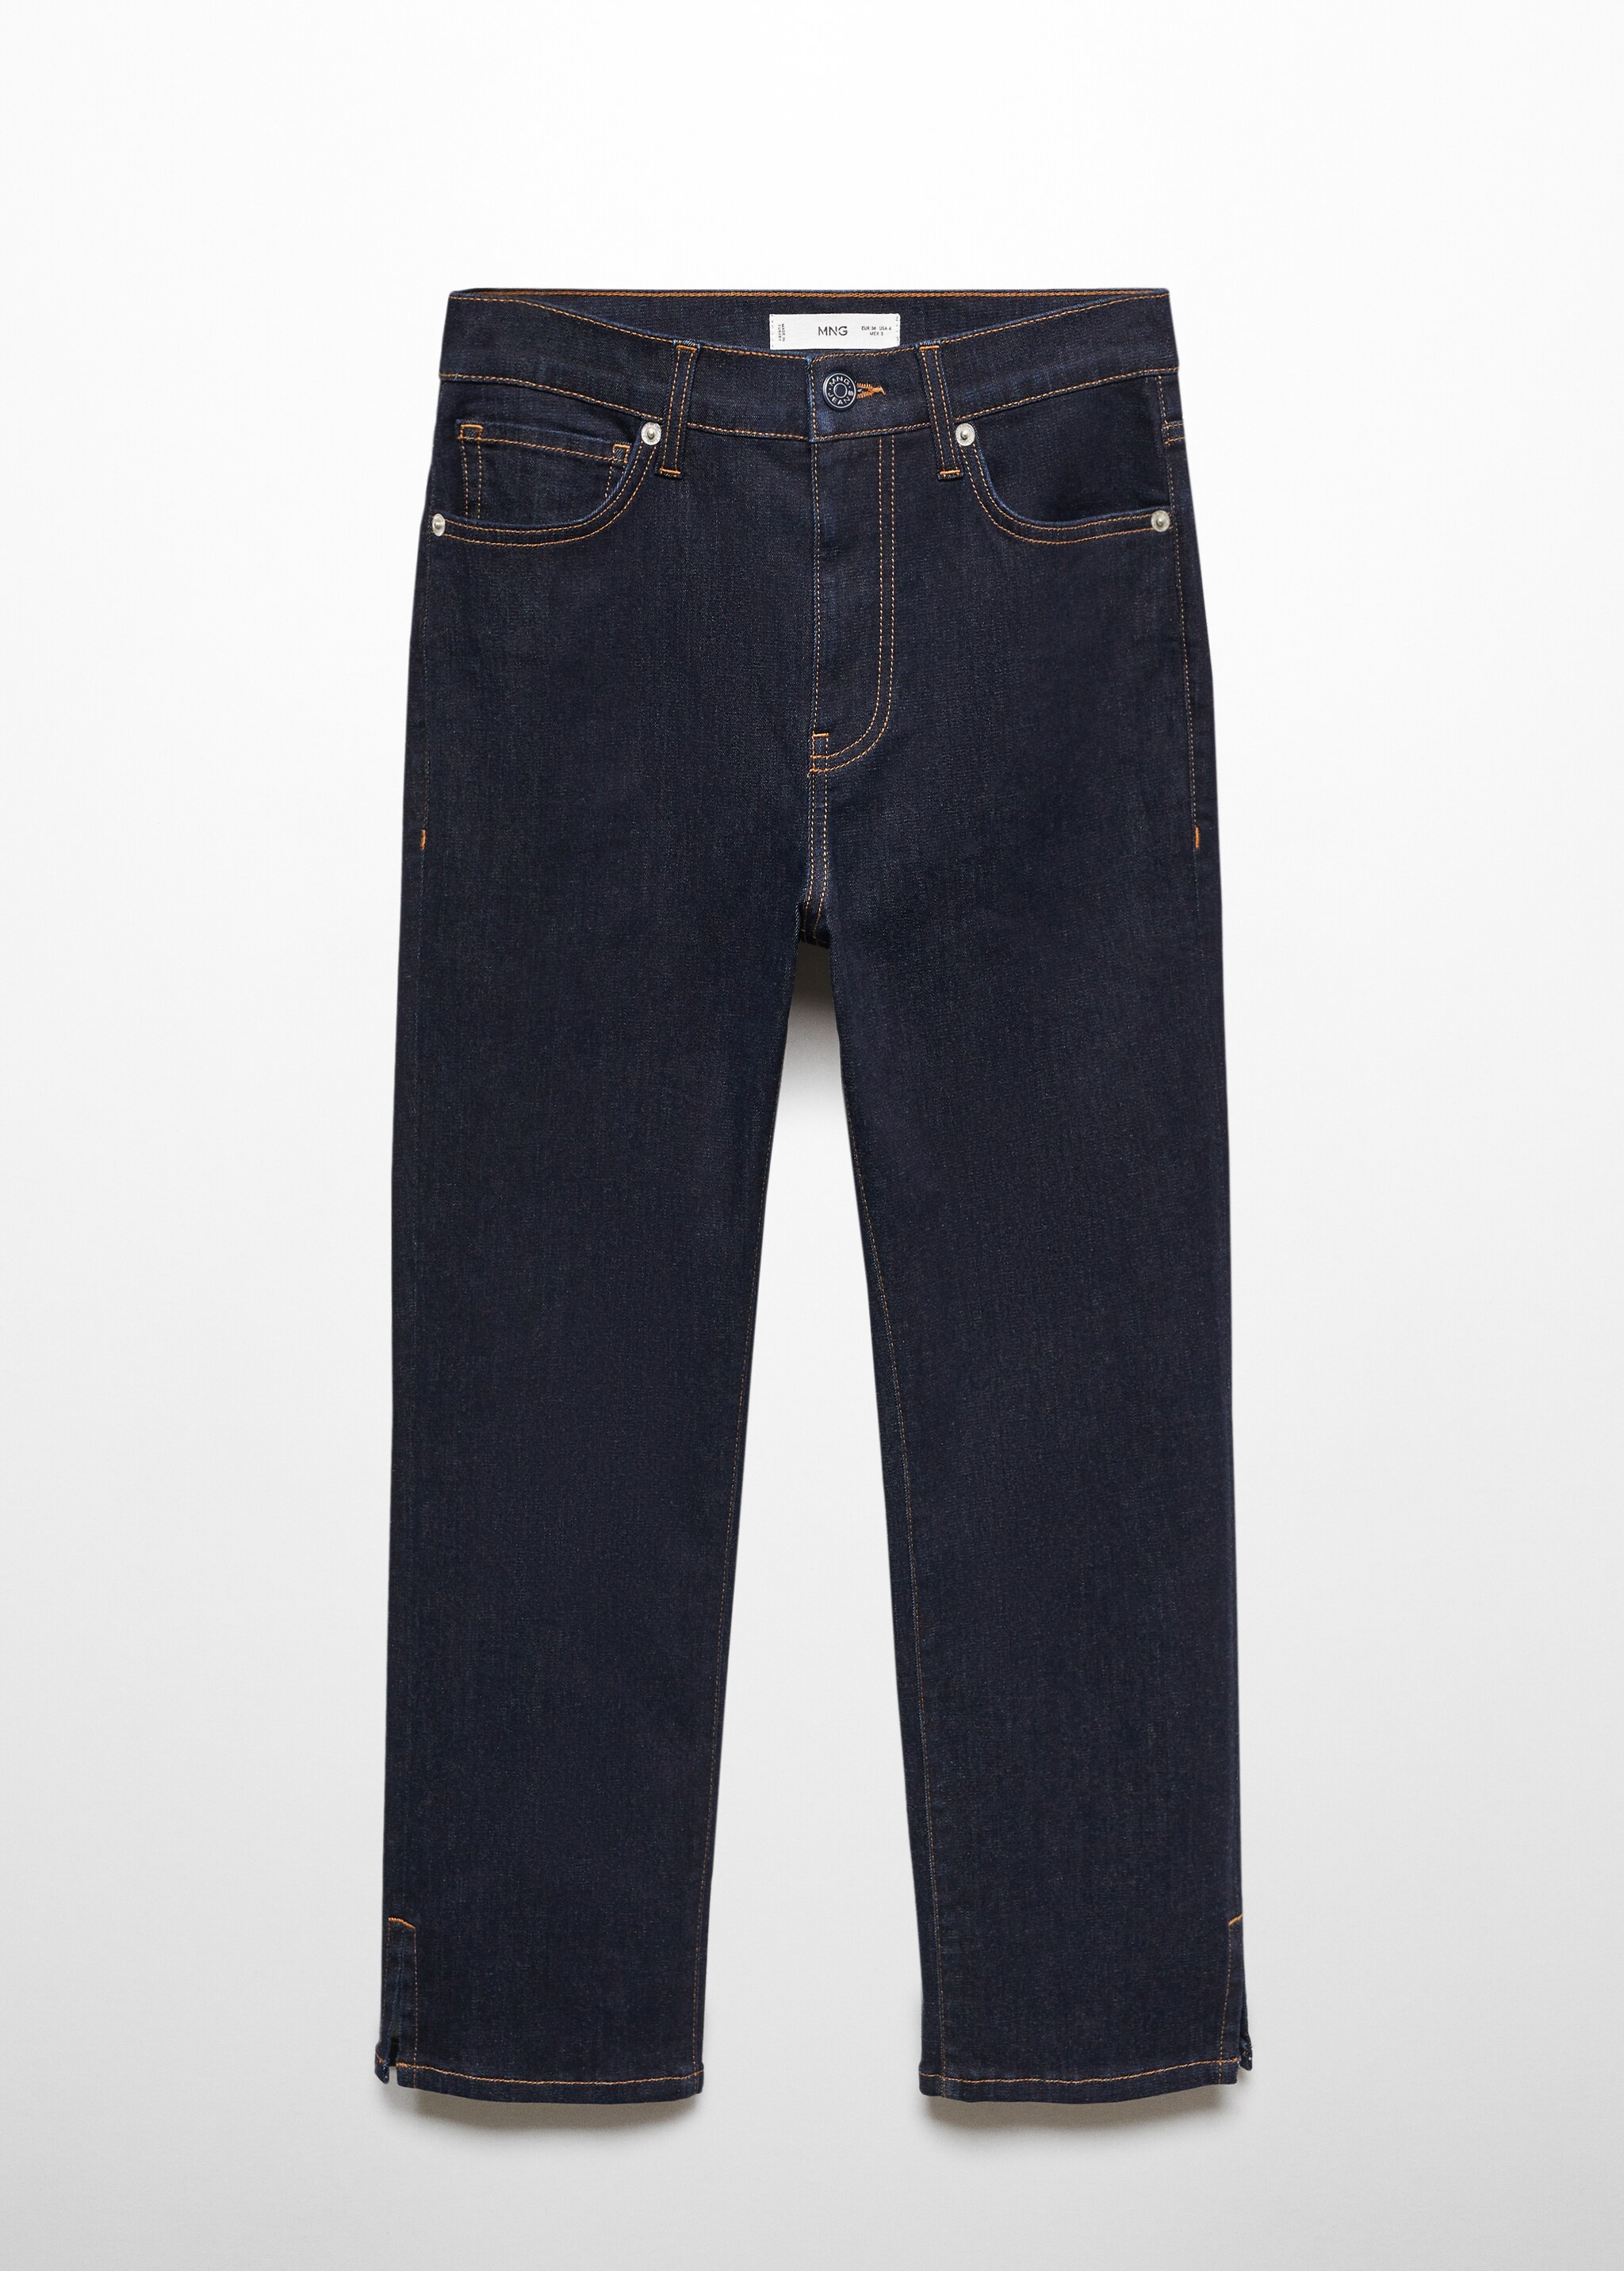 Jeans capri spacco laterale - Articolo senza modello